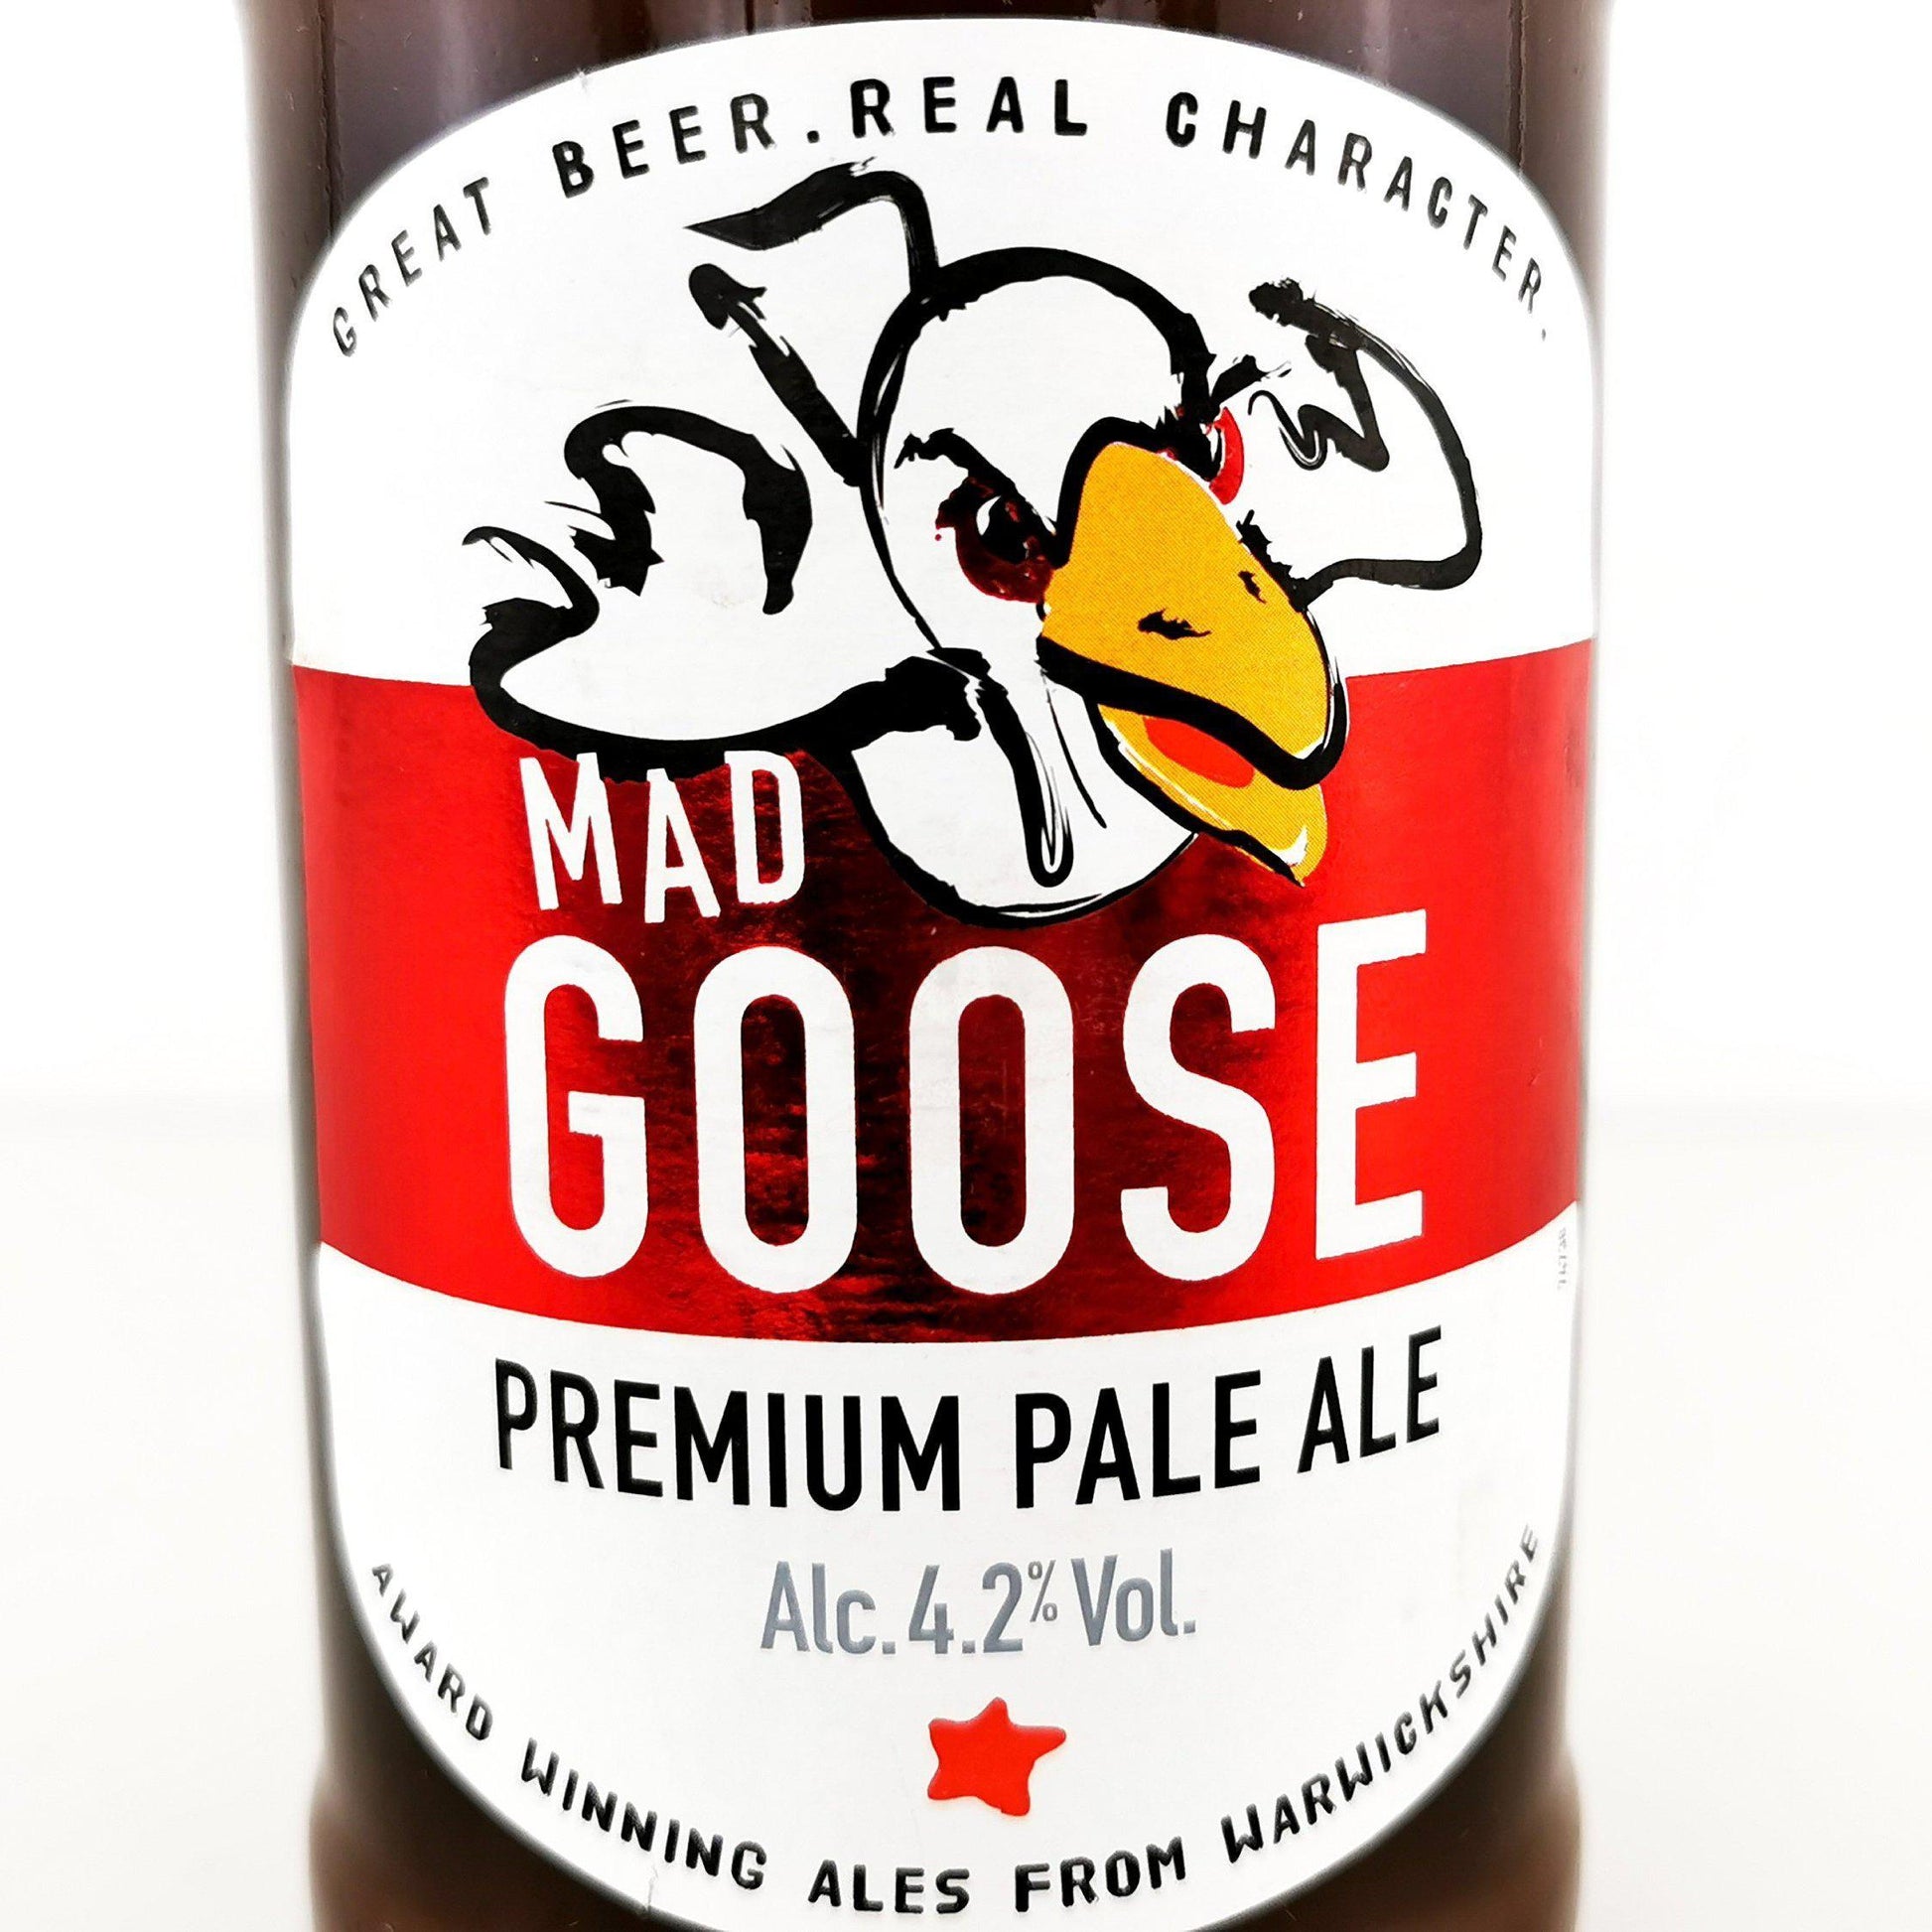 Mad Goose Beer Bottle Candle-Beer & Ale Bottle Candles-Adhock Homeware